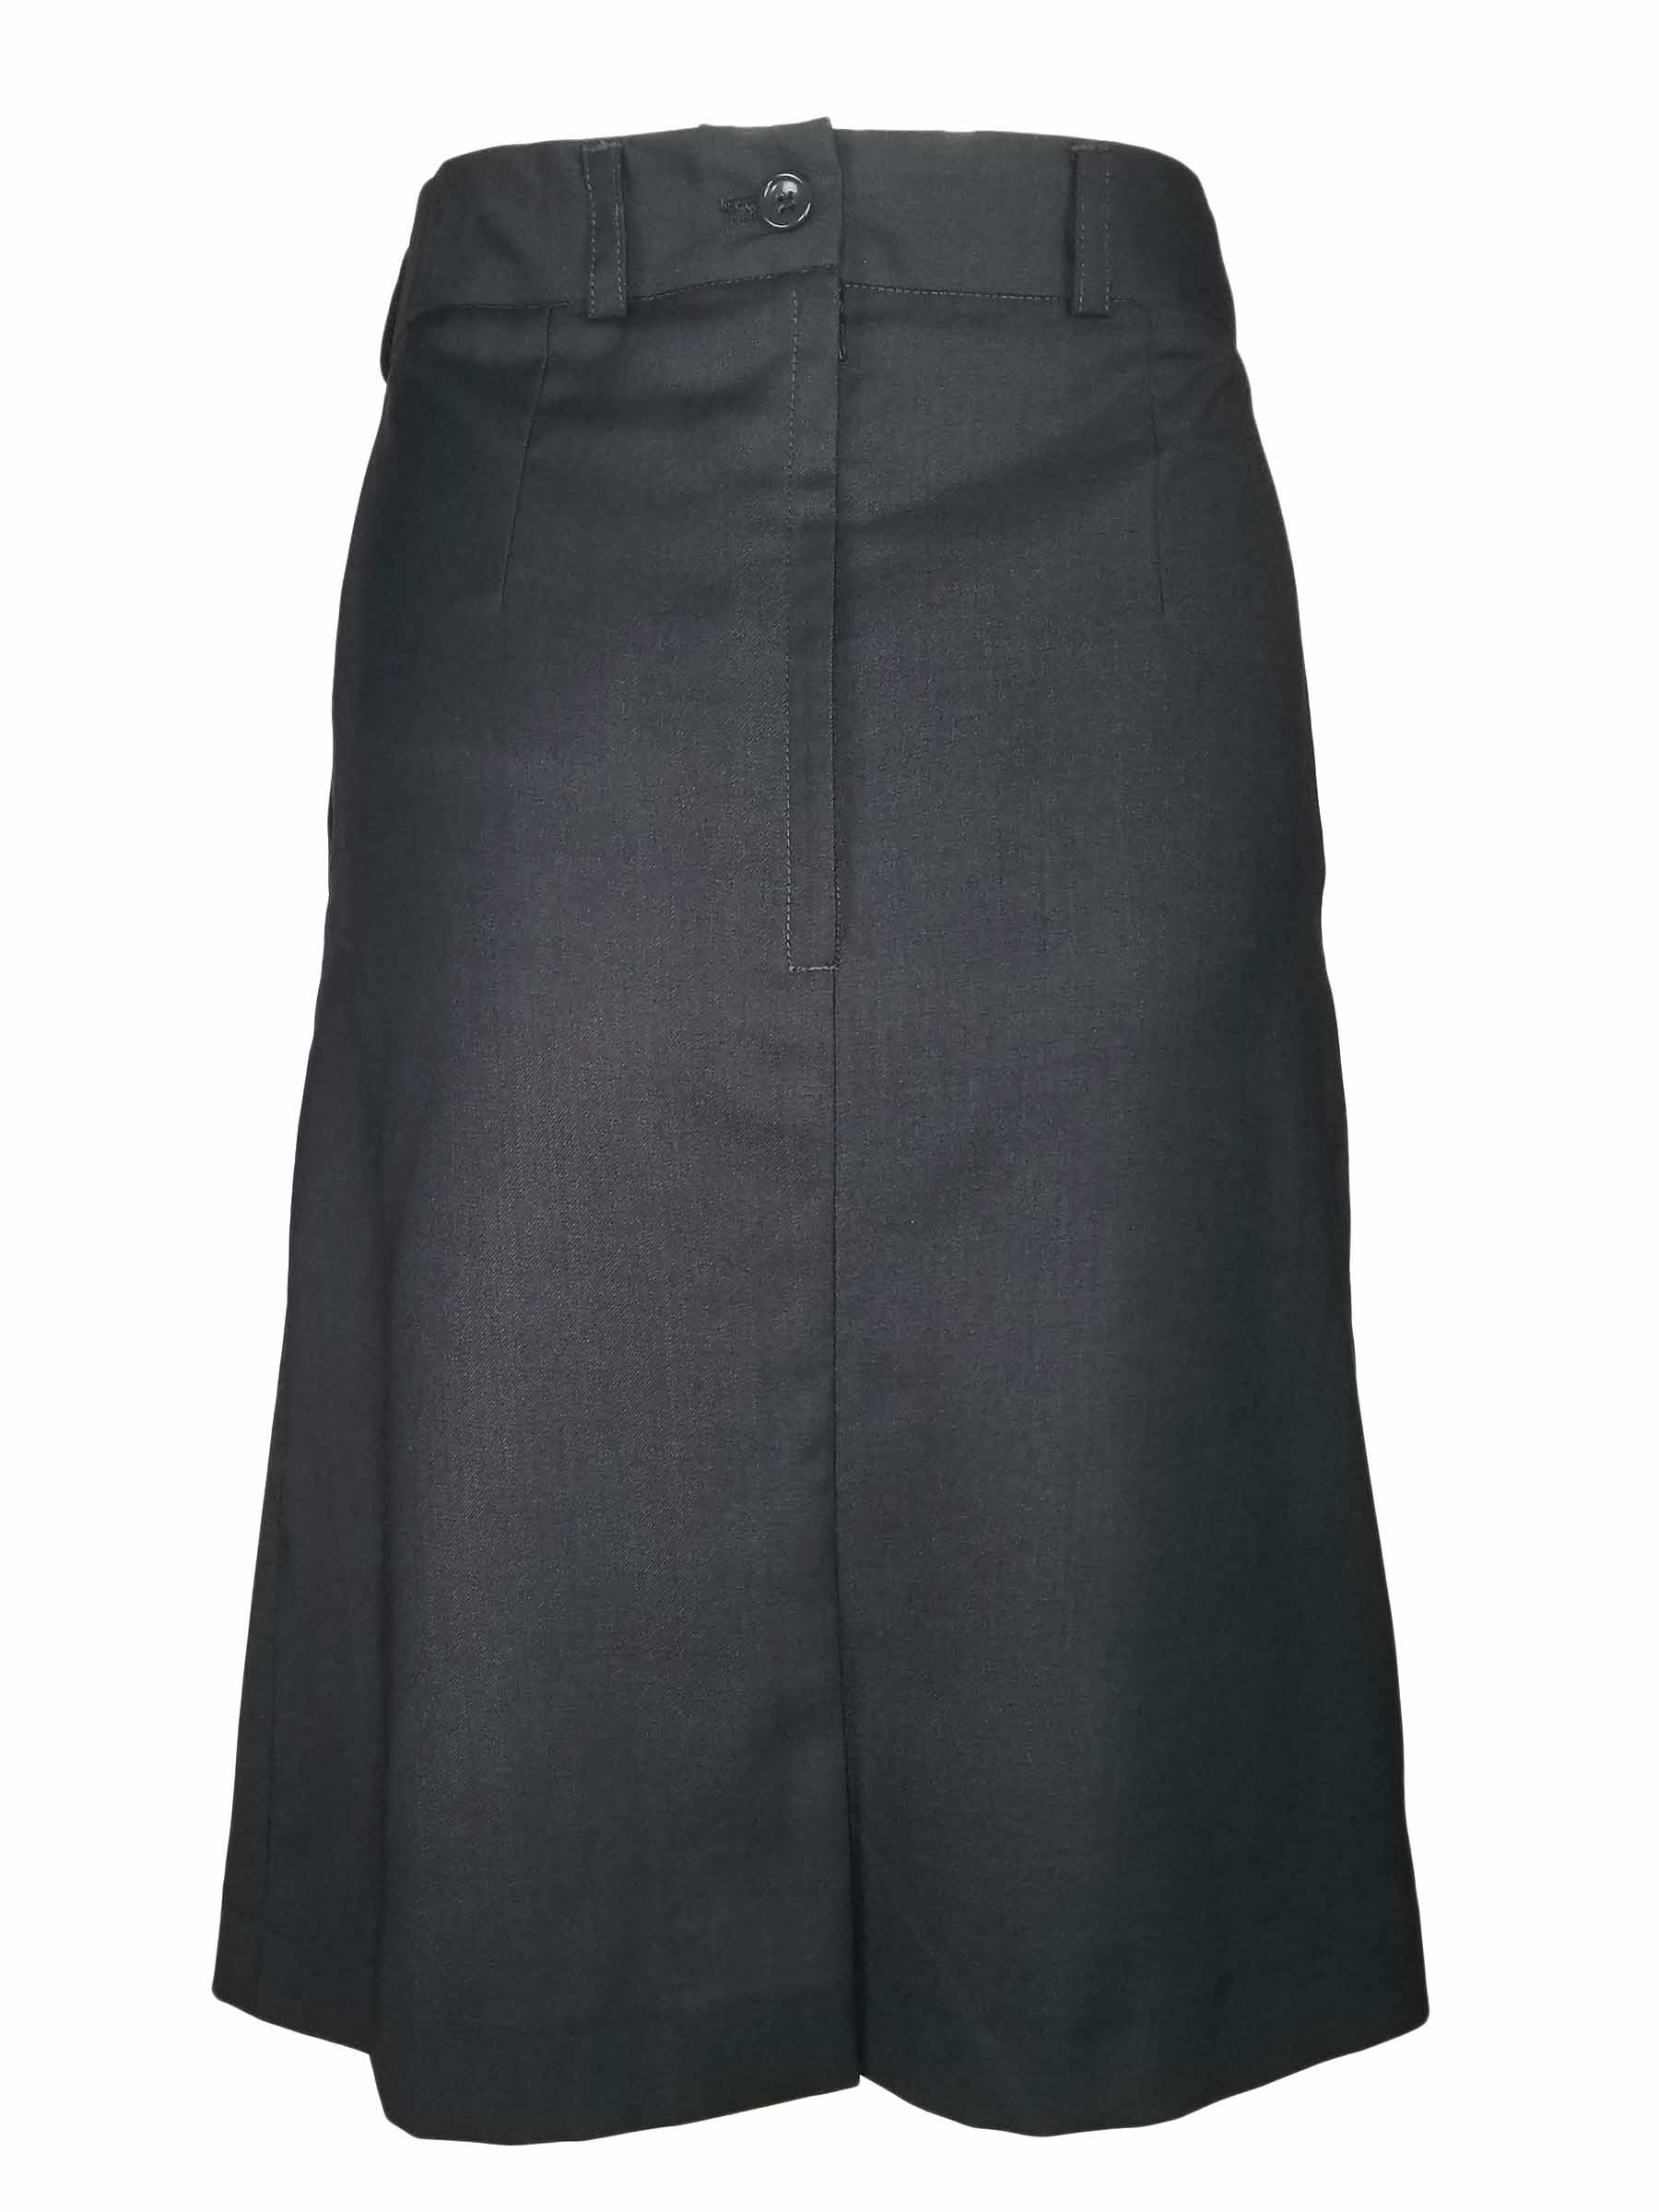 A-Line Skirt - Charcoal Wool Blend - Uniform Edit